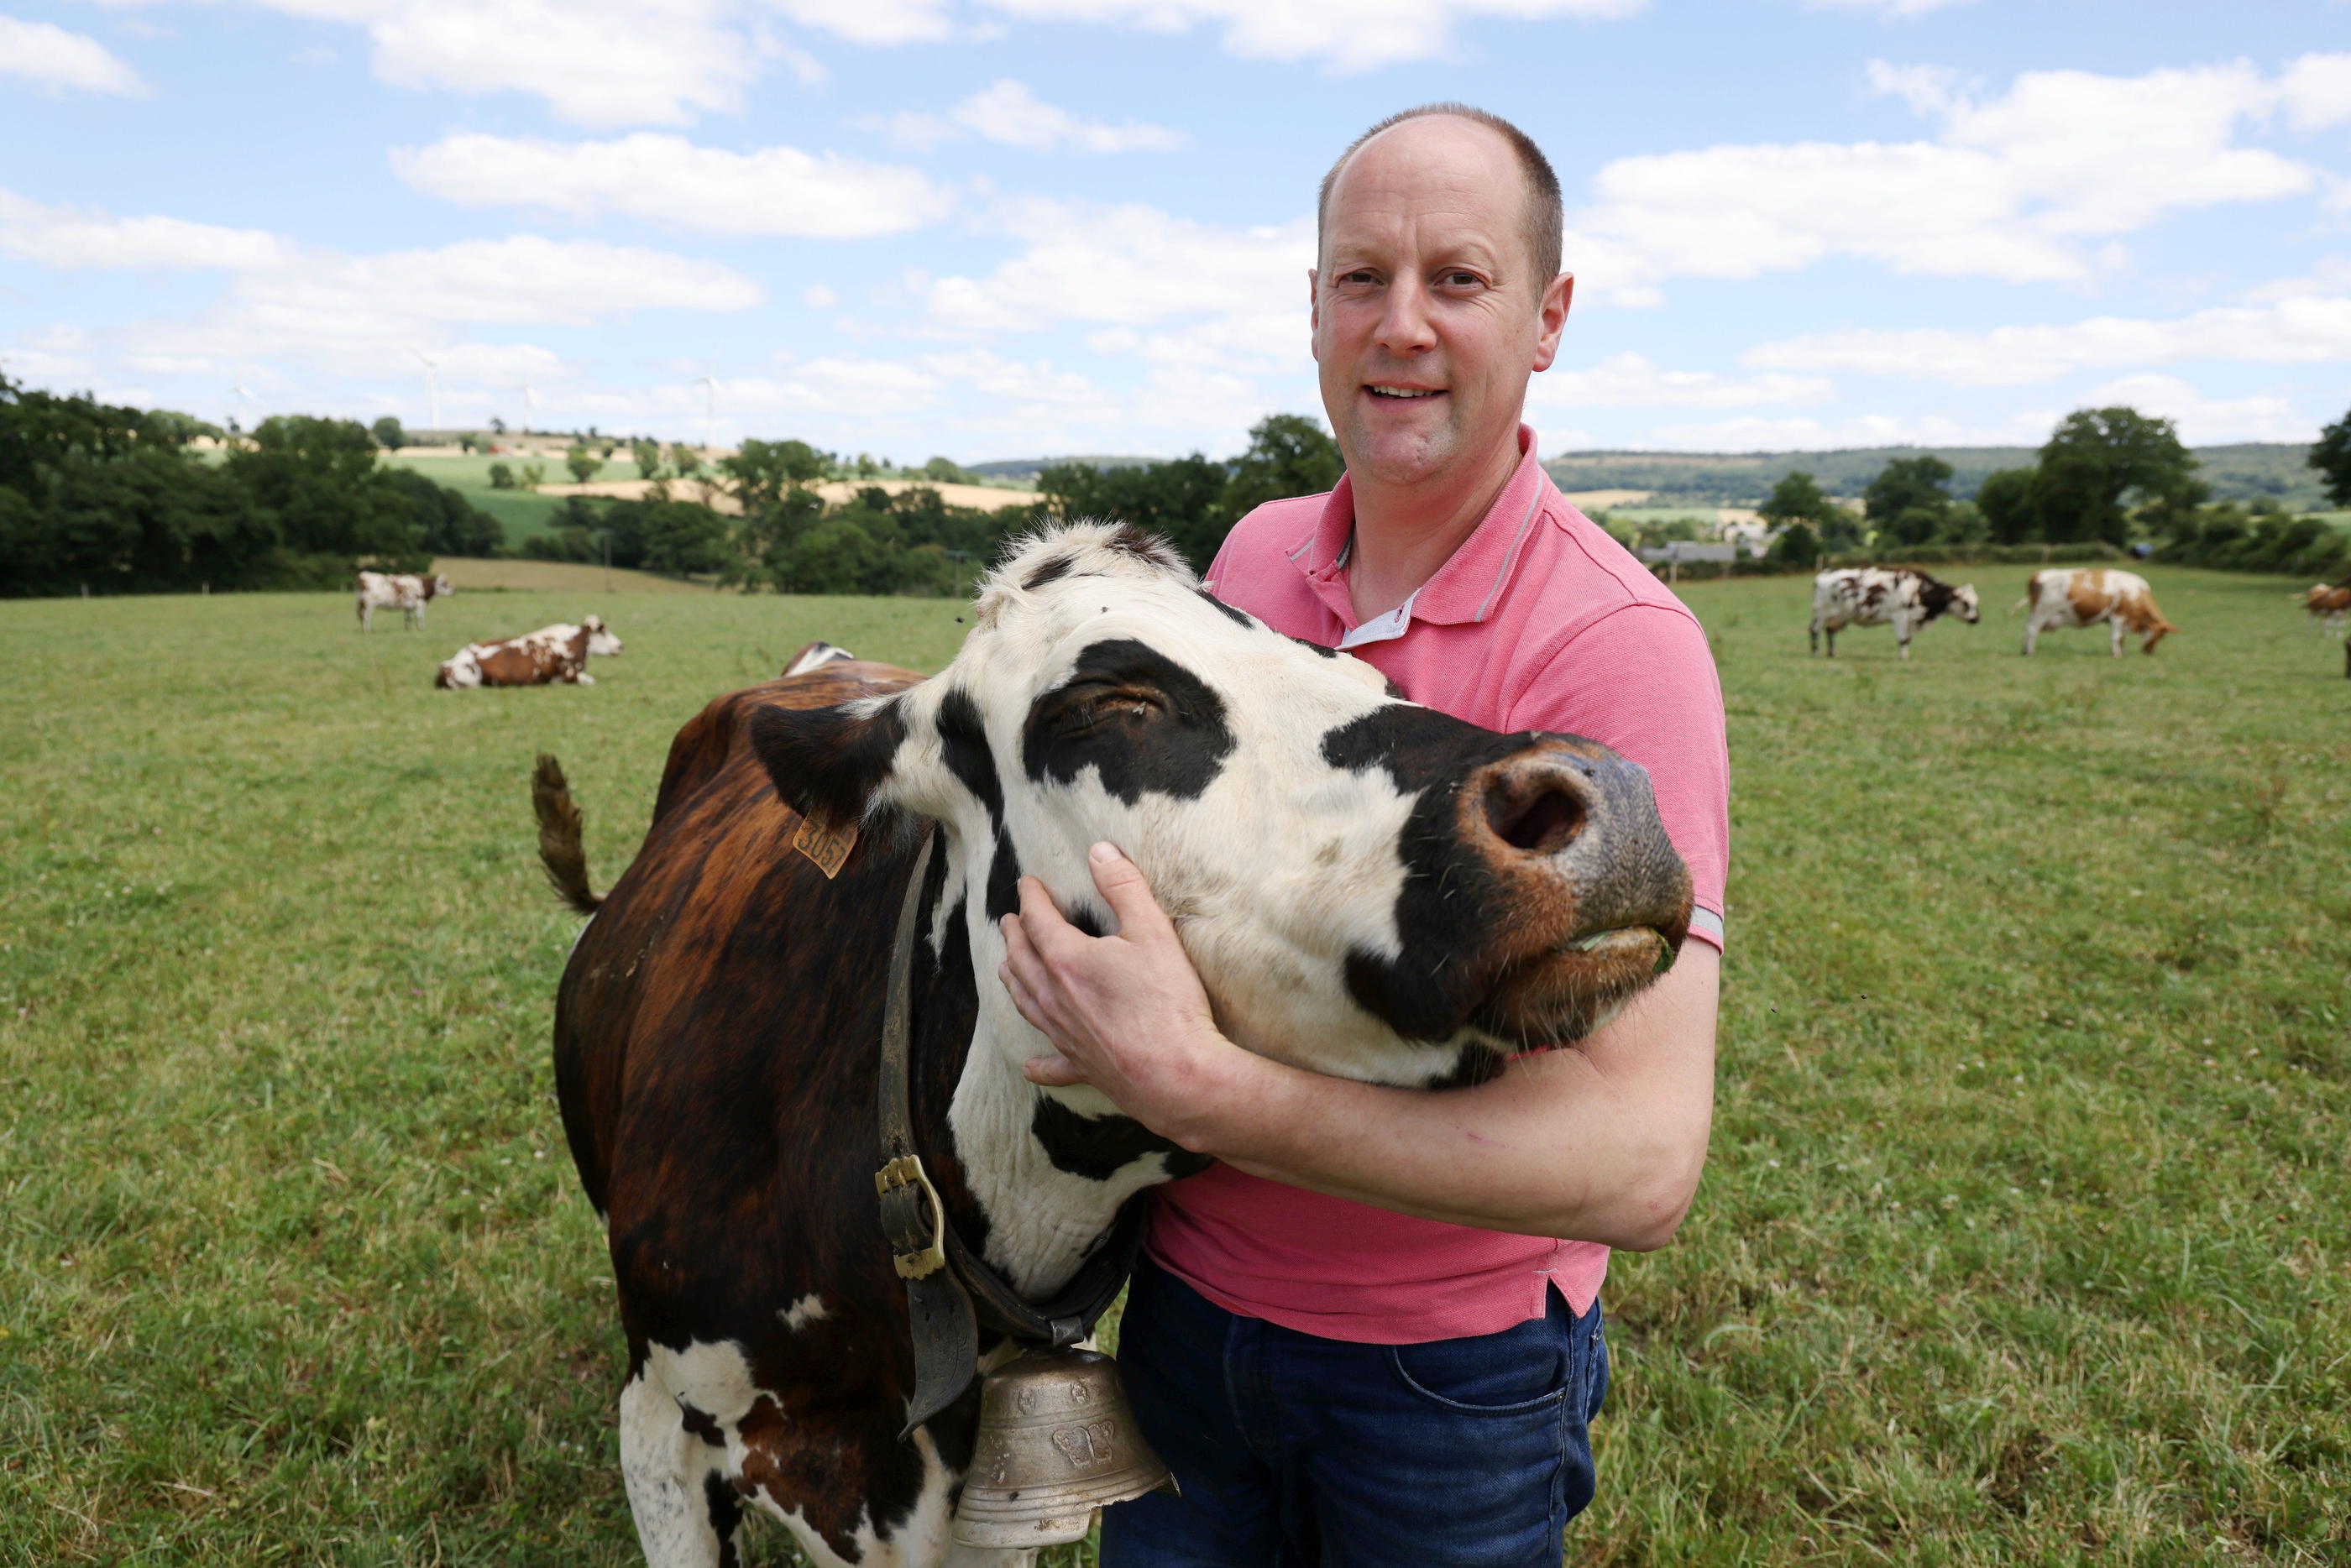 Pierre, à la tête d'une exploitation de vaches laitières à Villepail dans la Mayenne (ici le 28 juin), a longtemps rejeté son homosexualité avant de réussir à faire son coming out.  «J’ai commencé à vivre à 31 ans», confie-t-il.